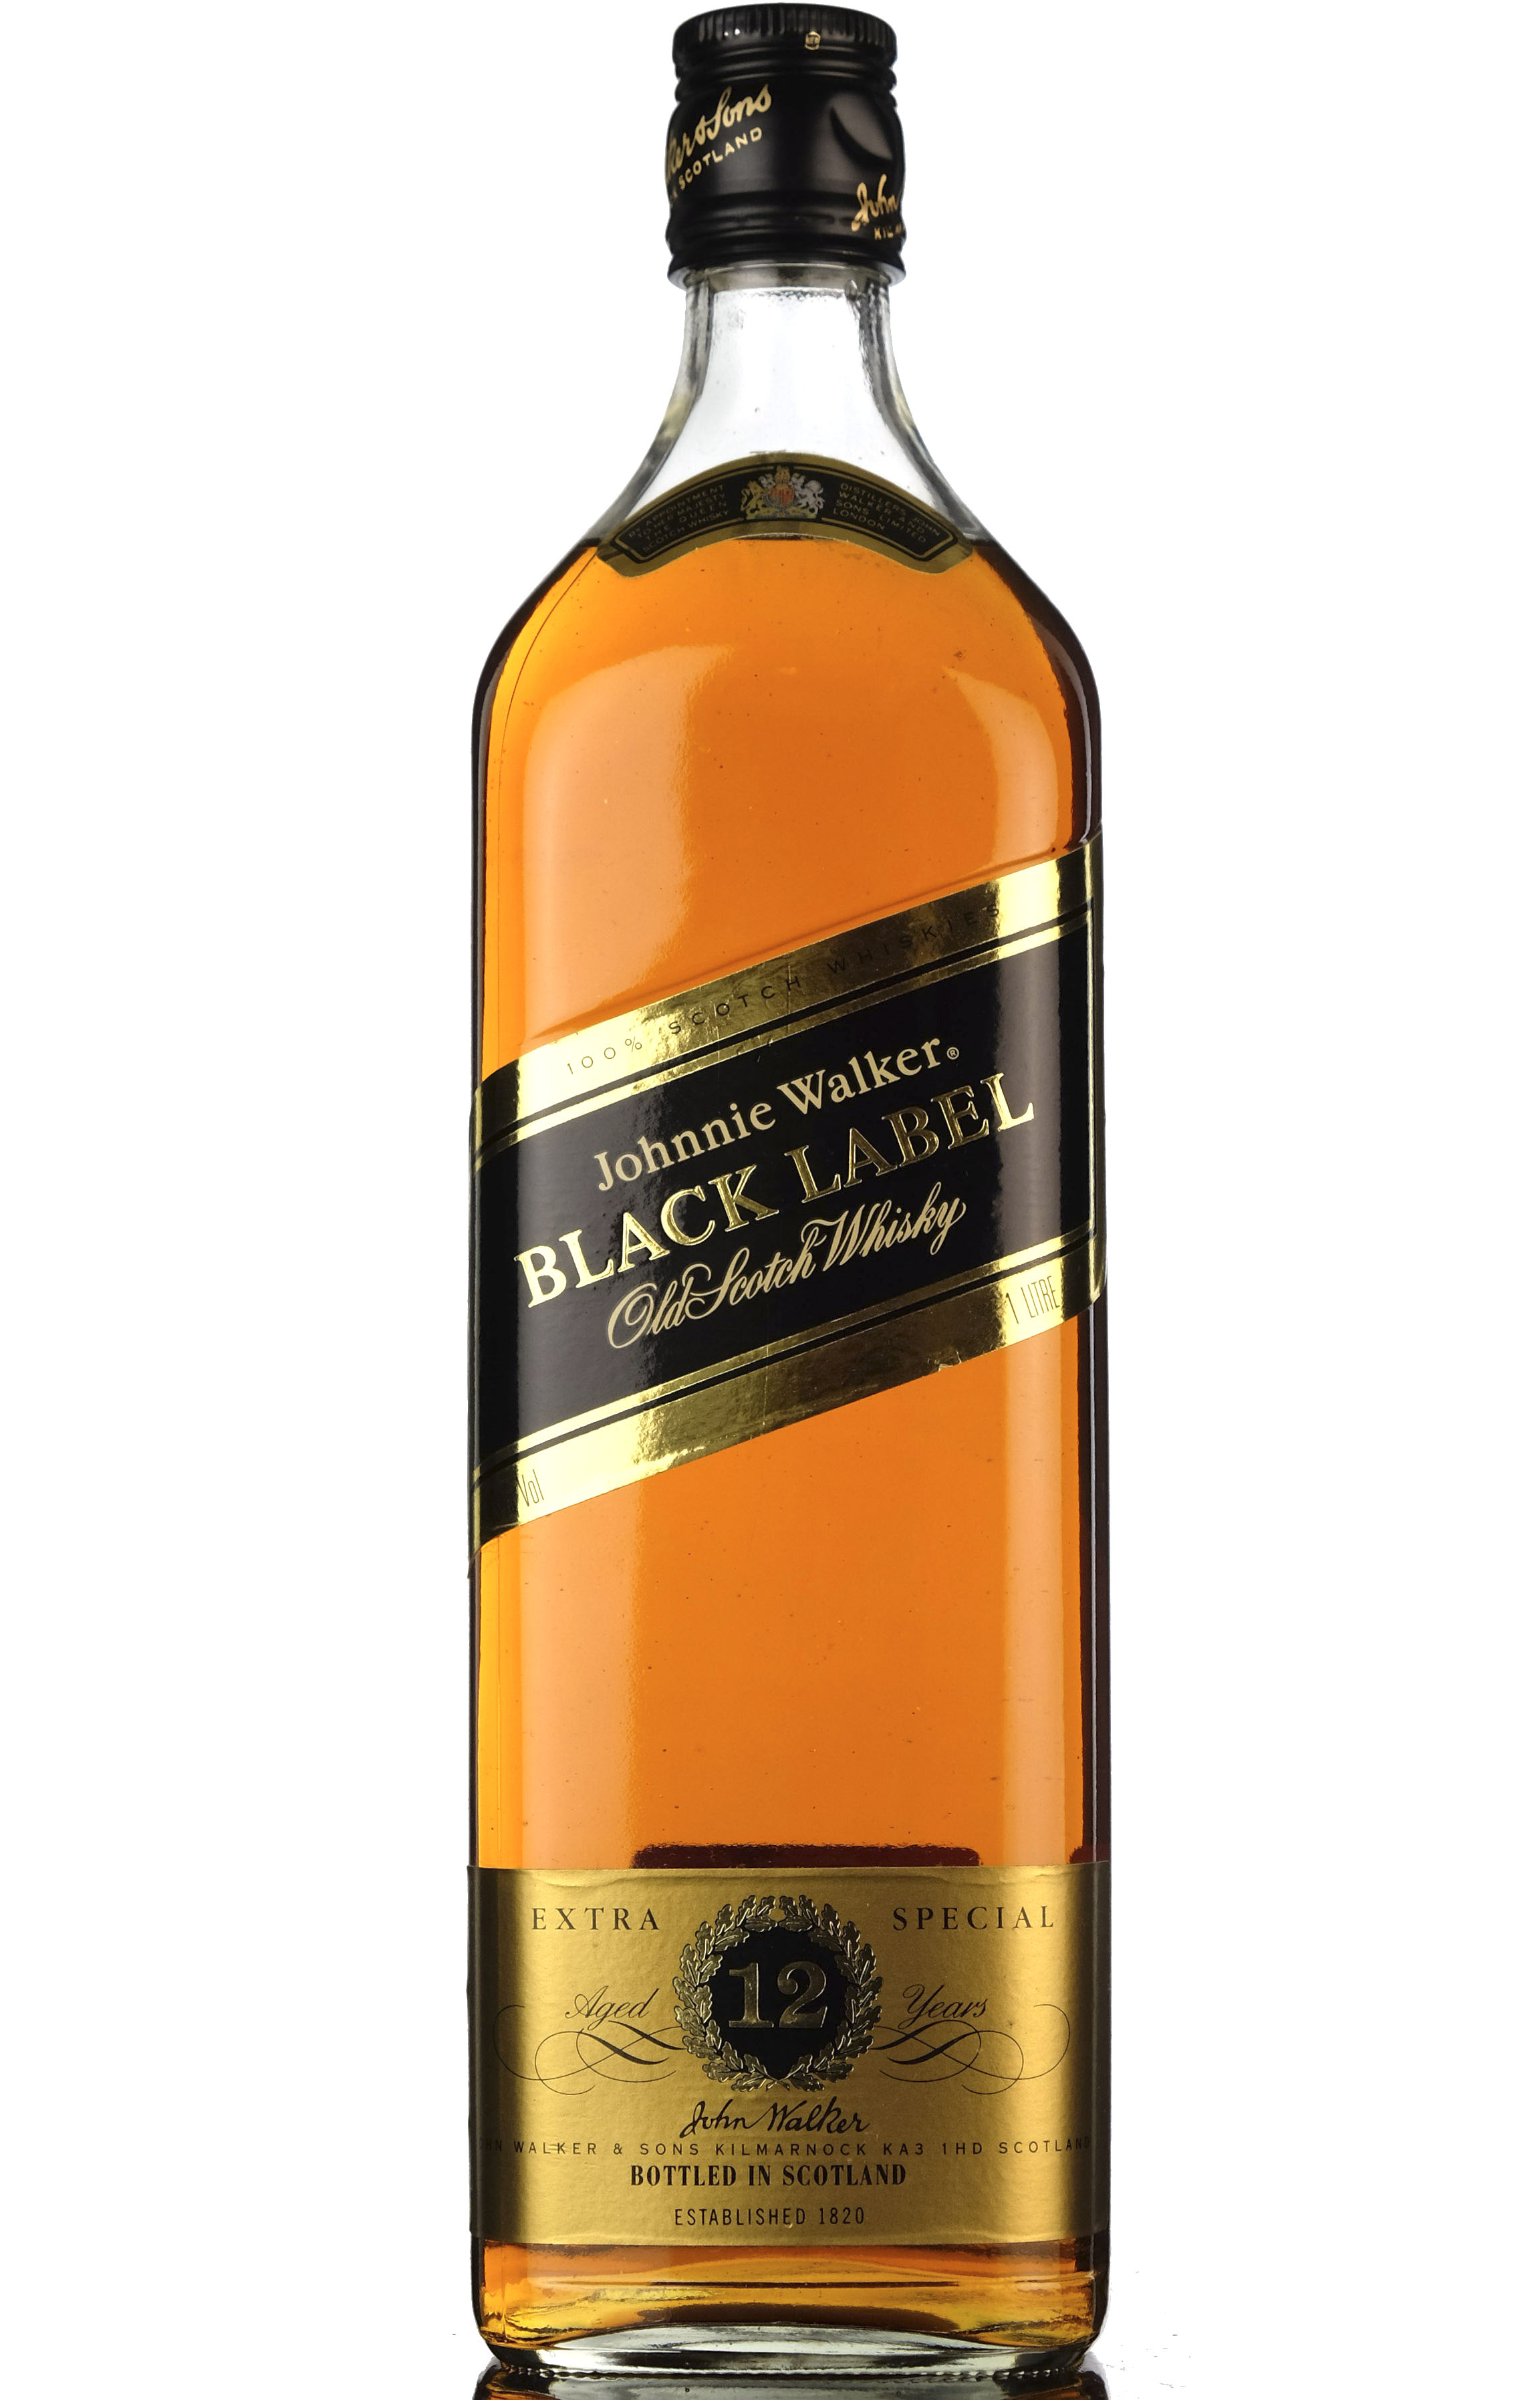 Johnnie Walker Black Label - 1 Litre